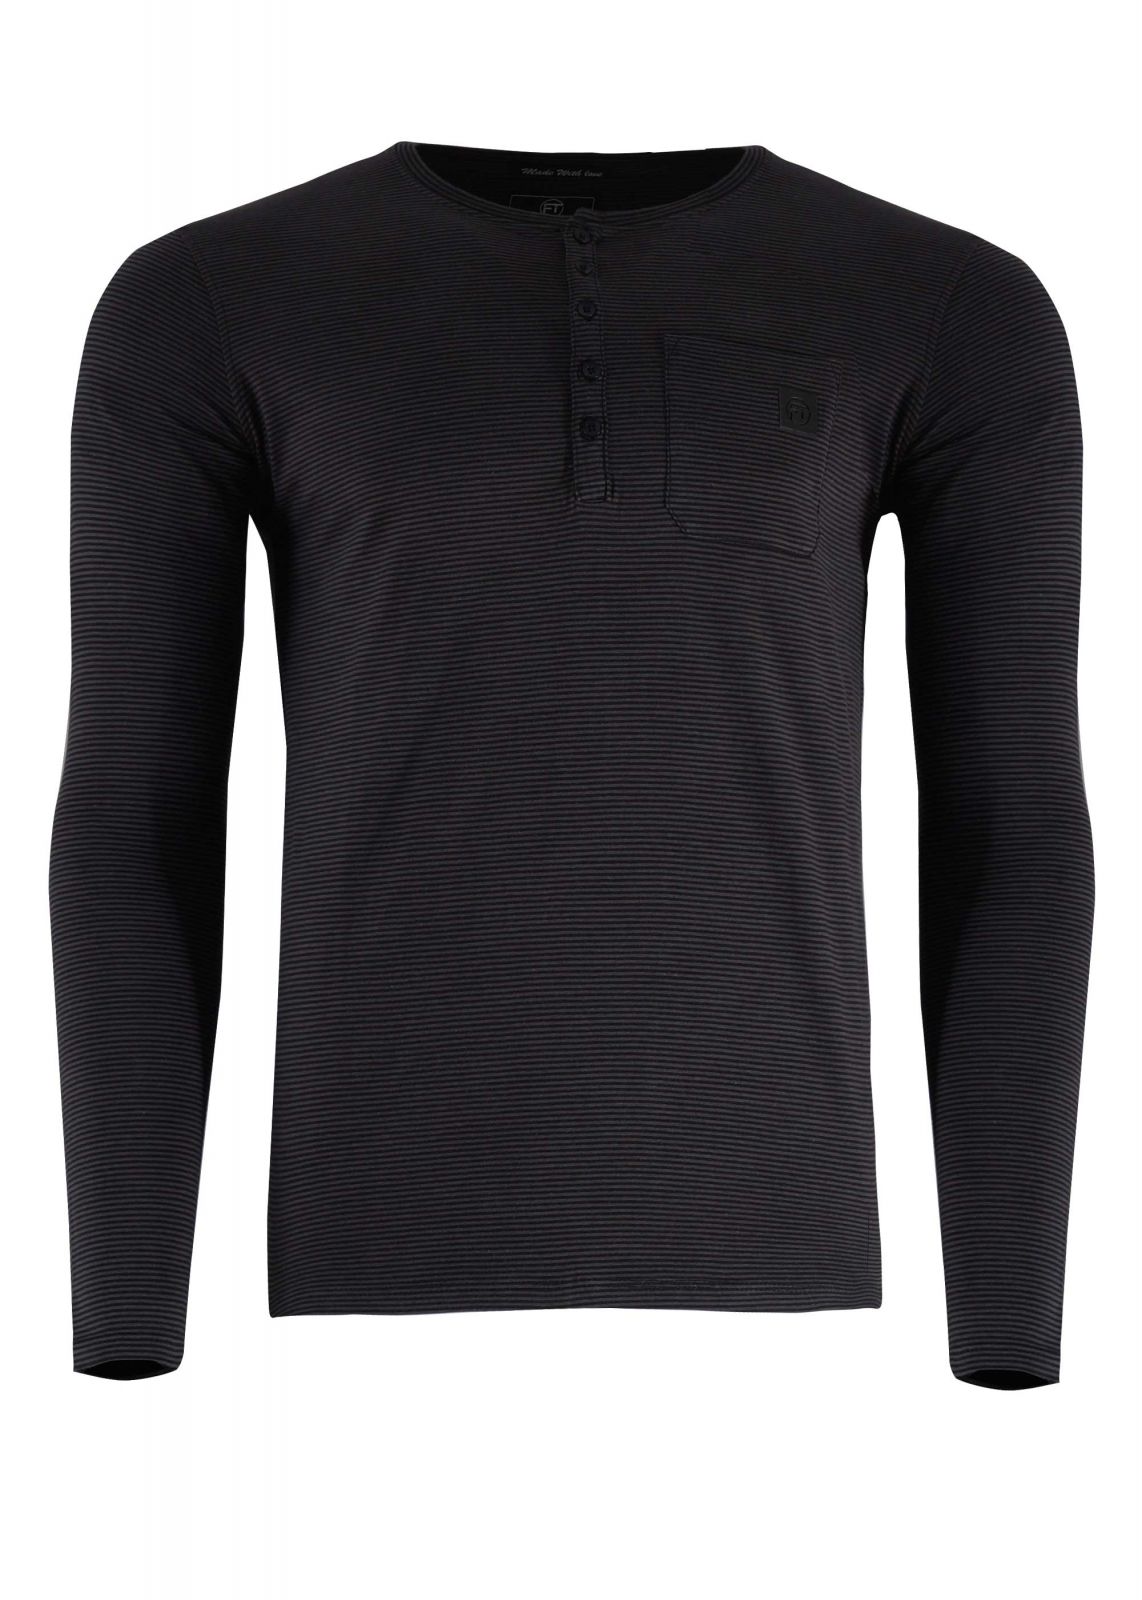 Αντρική μπλούζα Frank Tailor ριγέ με κουμπιά. Basic Collection